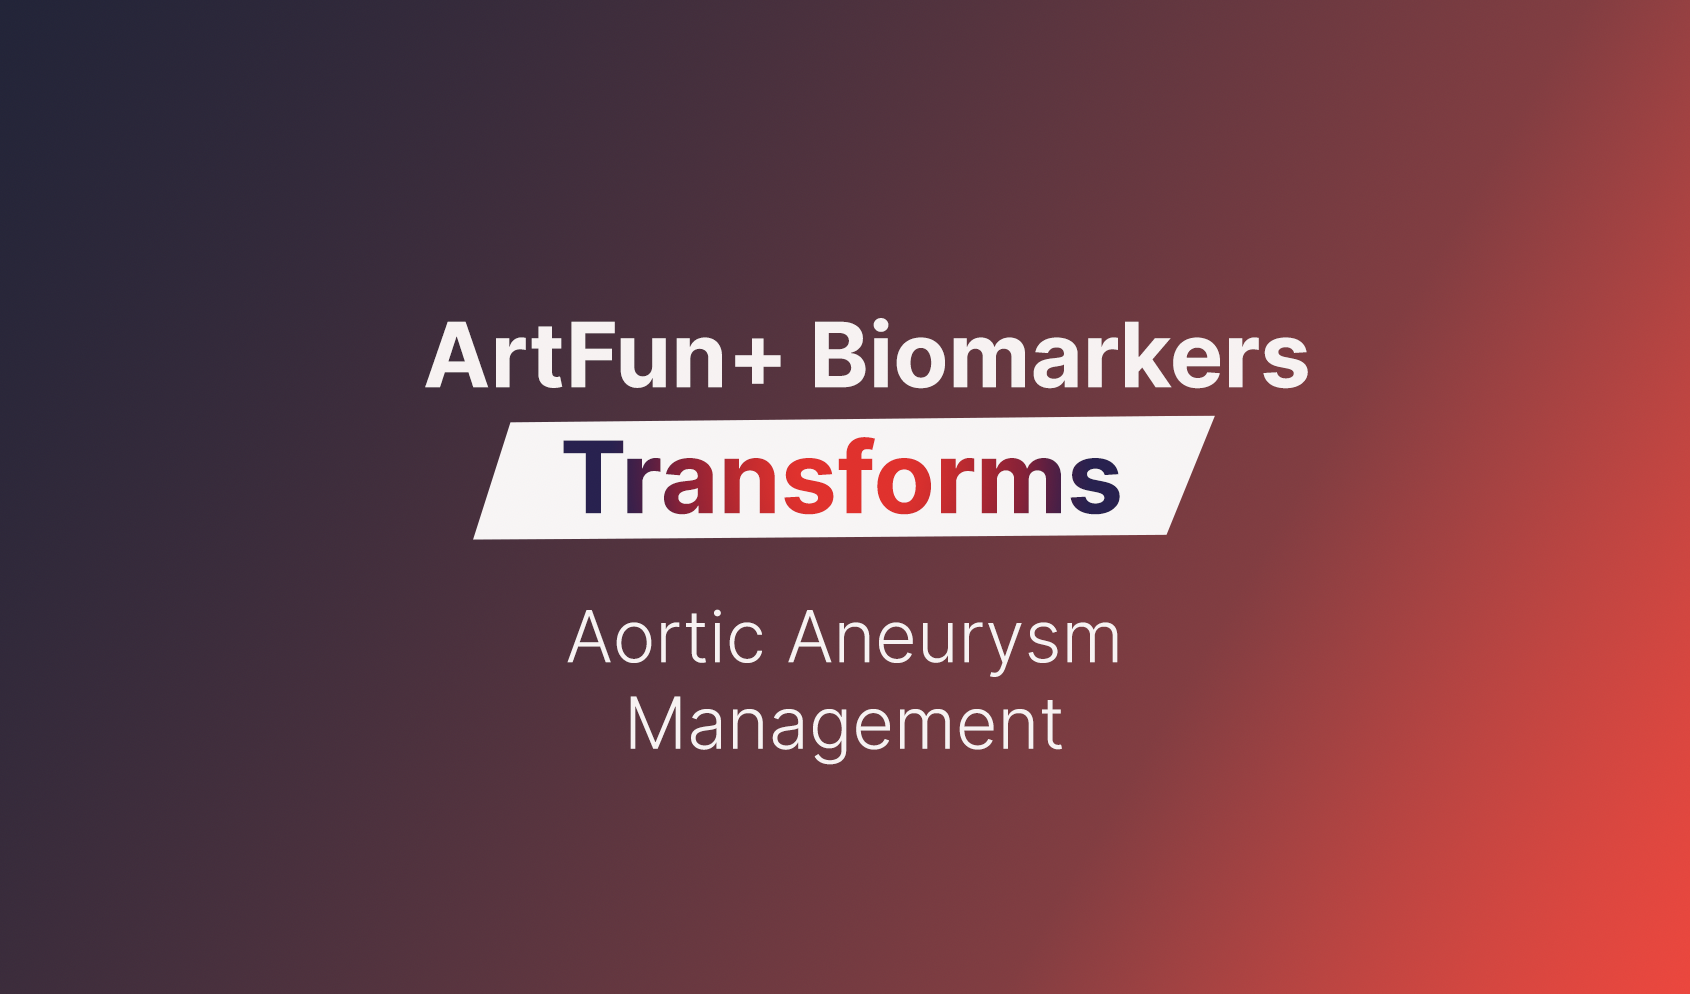 Artfun+ Biomarkers Transforms Aortic Aneurysm Management